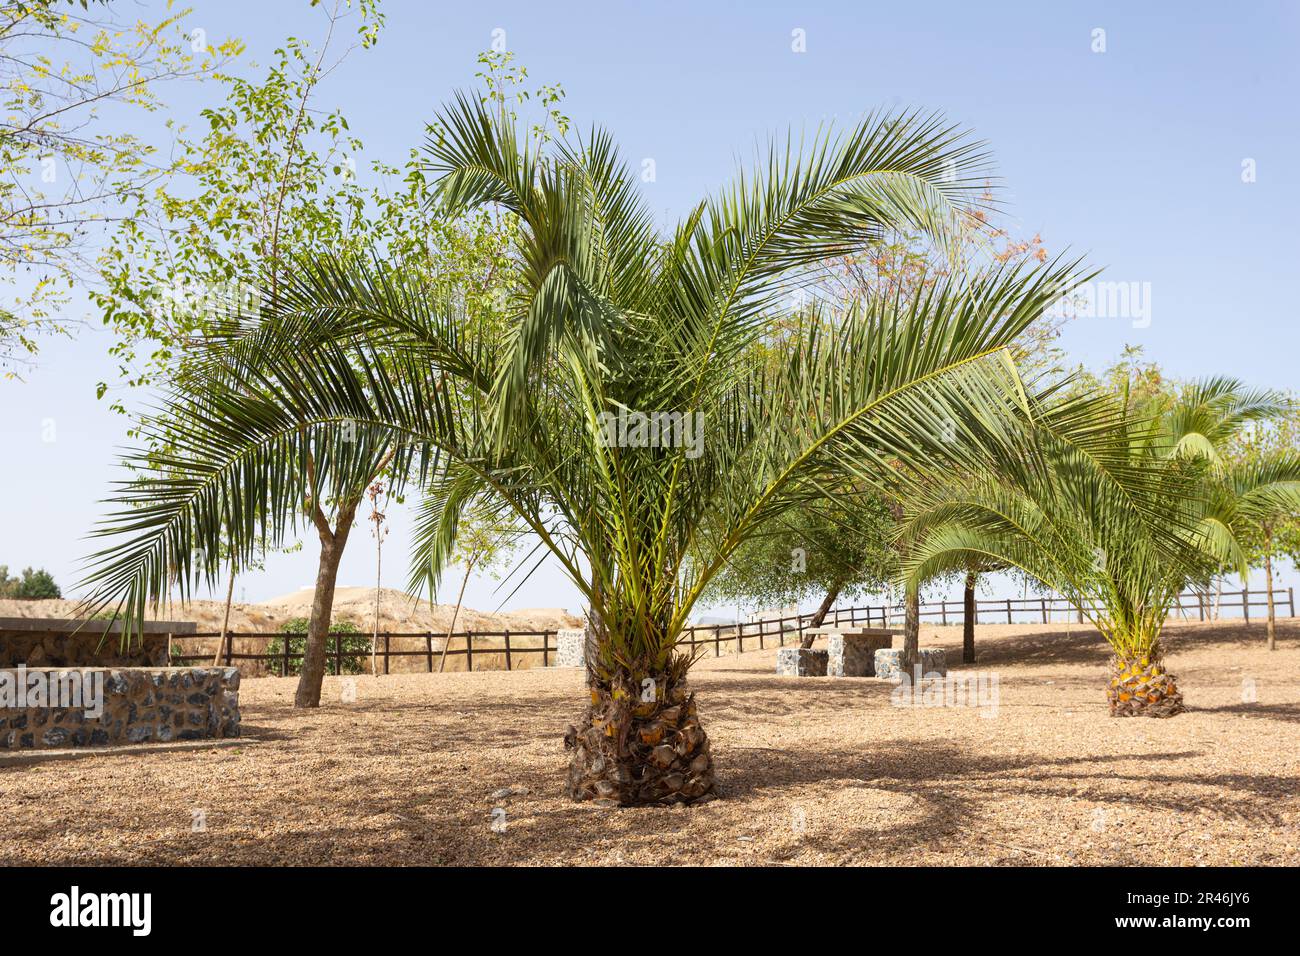 Petits palmiers avec de grandes feuilles dans la zone de loisirs. Estrémadure, Espagne. Banque D'Images